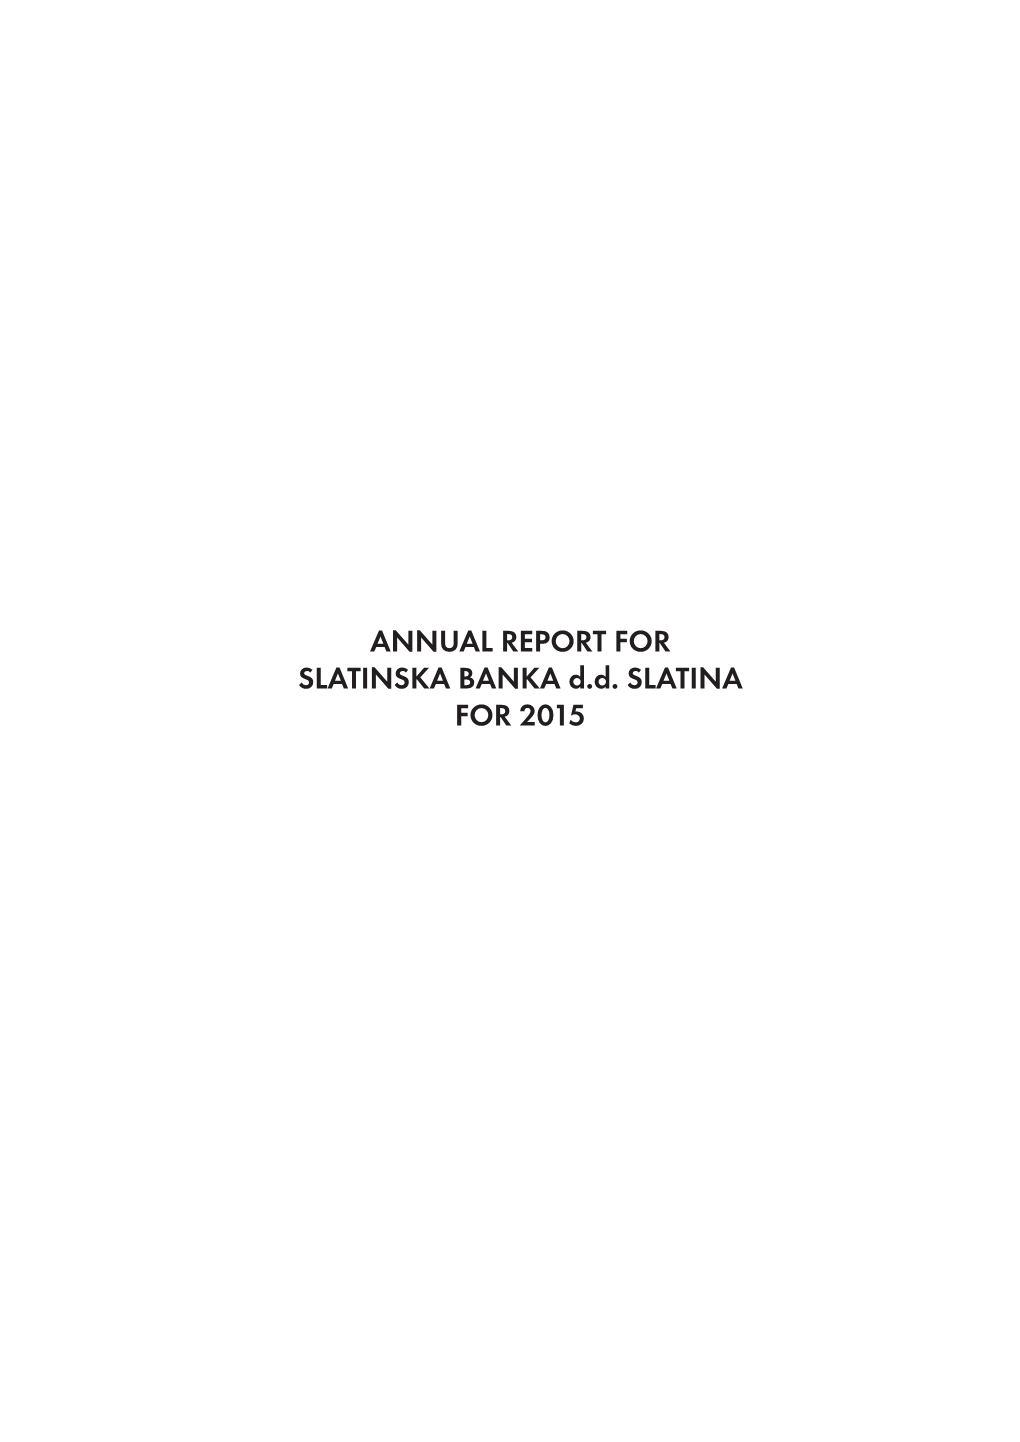 ANNUAL REPORT for SLATINSKA BANKA D.D. SLATINA for 2015